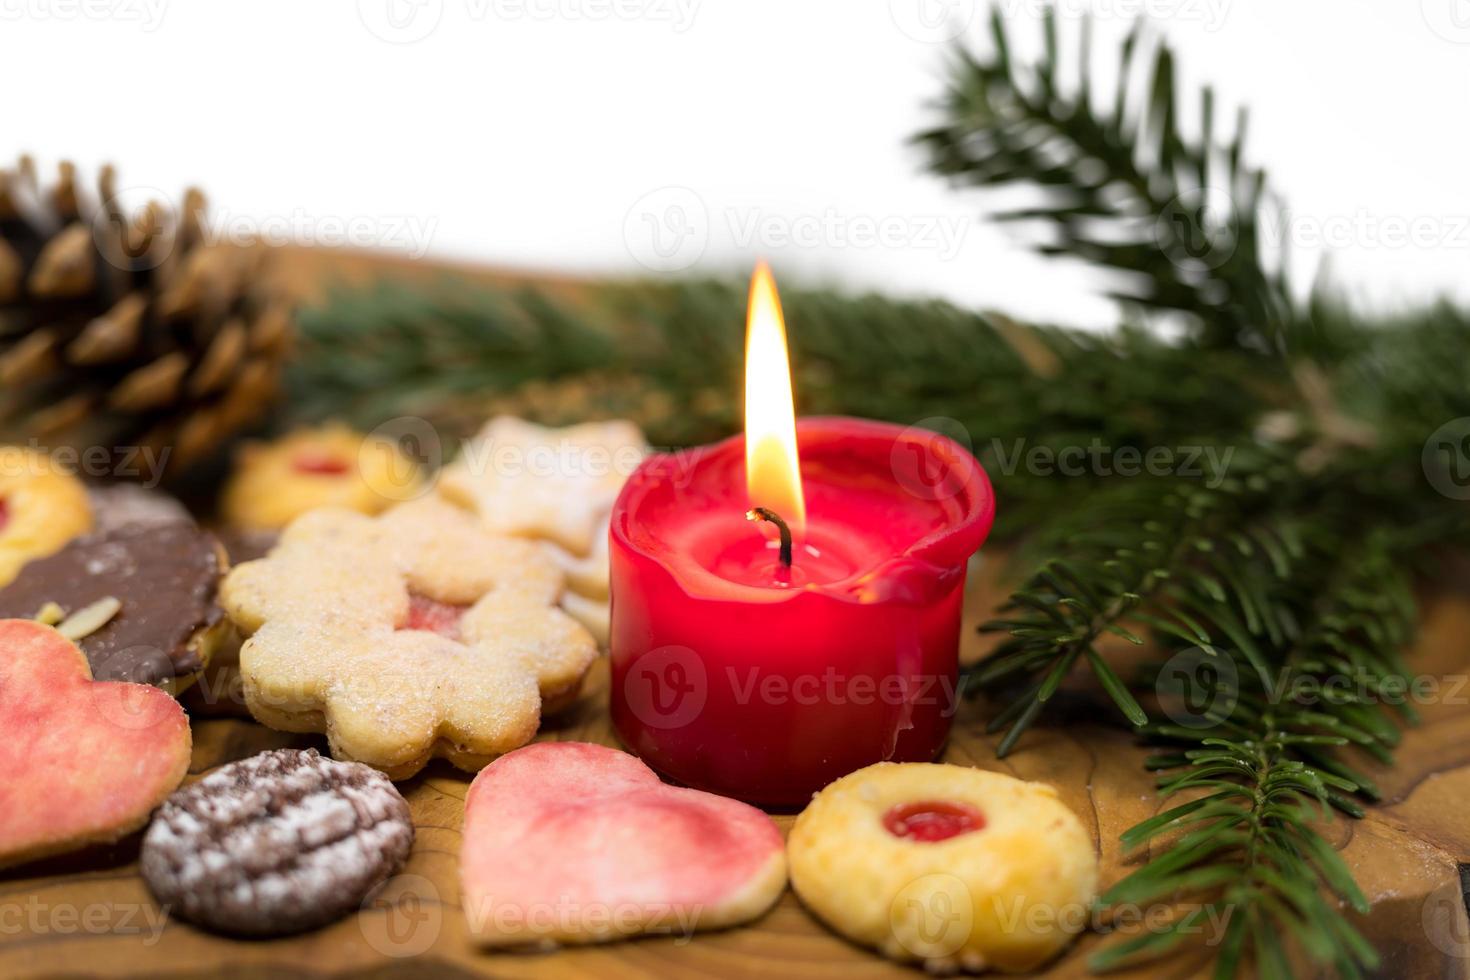 brinnande rött ljus står mellan dekorerade julkakor på en träskiva foto